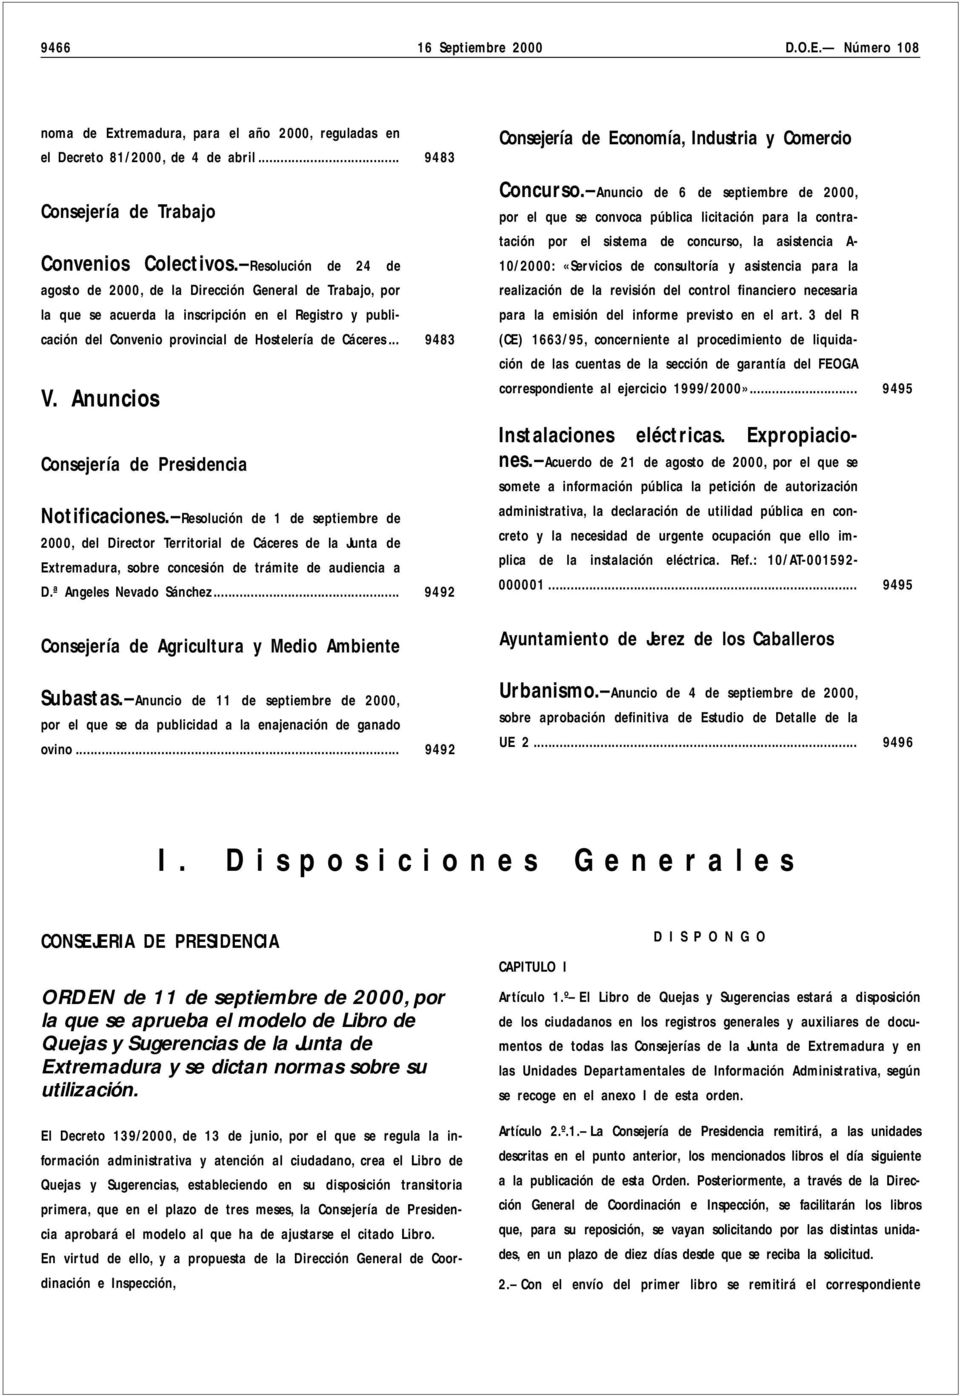 Anuncios Consejería de Presidencia Notificaciones. Resolución de 1 de septiembre de 2000, del Director Territorial de Cáceres de la Junta de Extremadura, sobre concesión de trámite de audiencia a D.